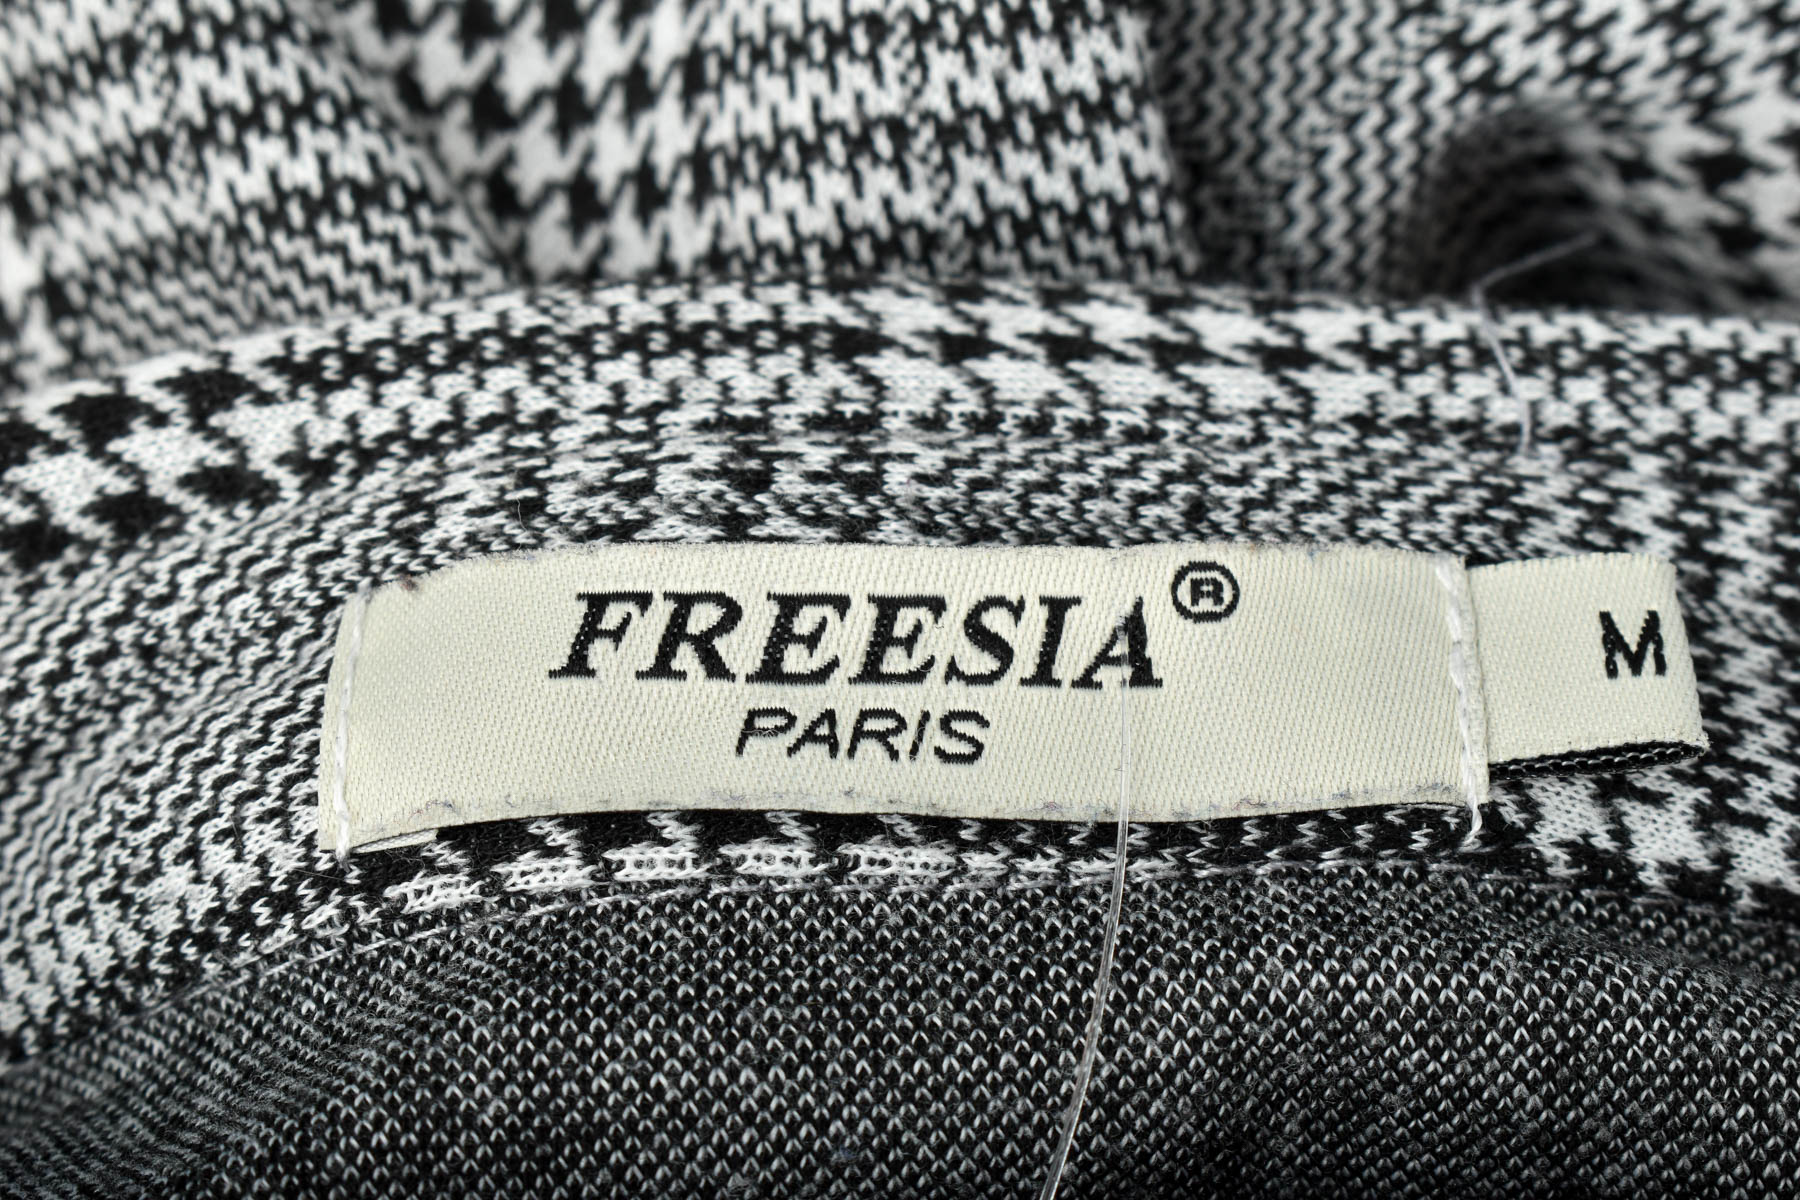 Γυναικεία μπλούζα - Freesia Paris - 2